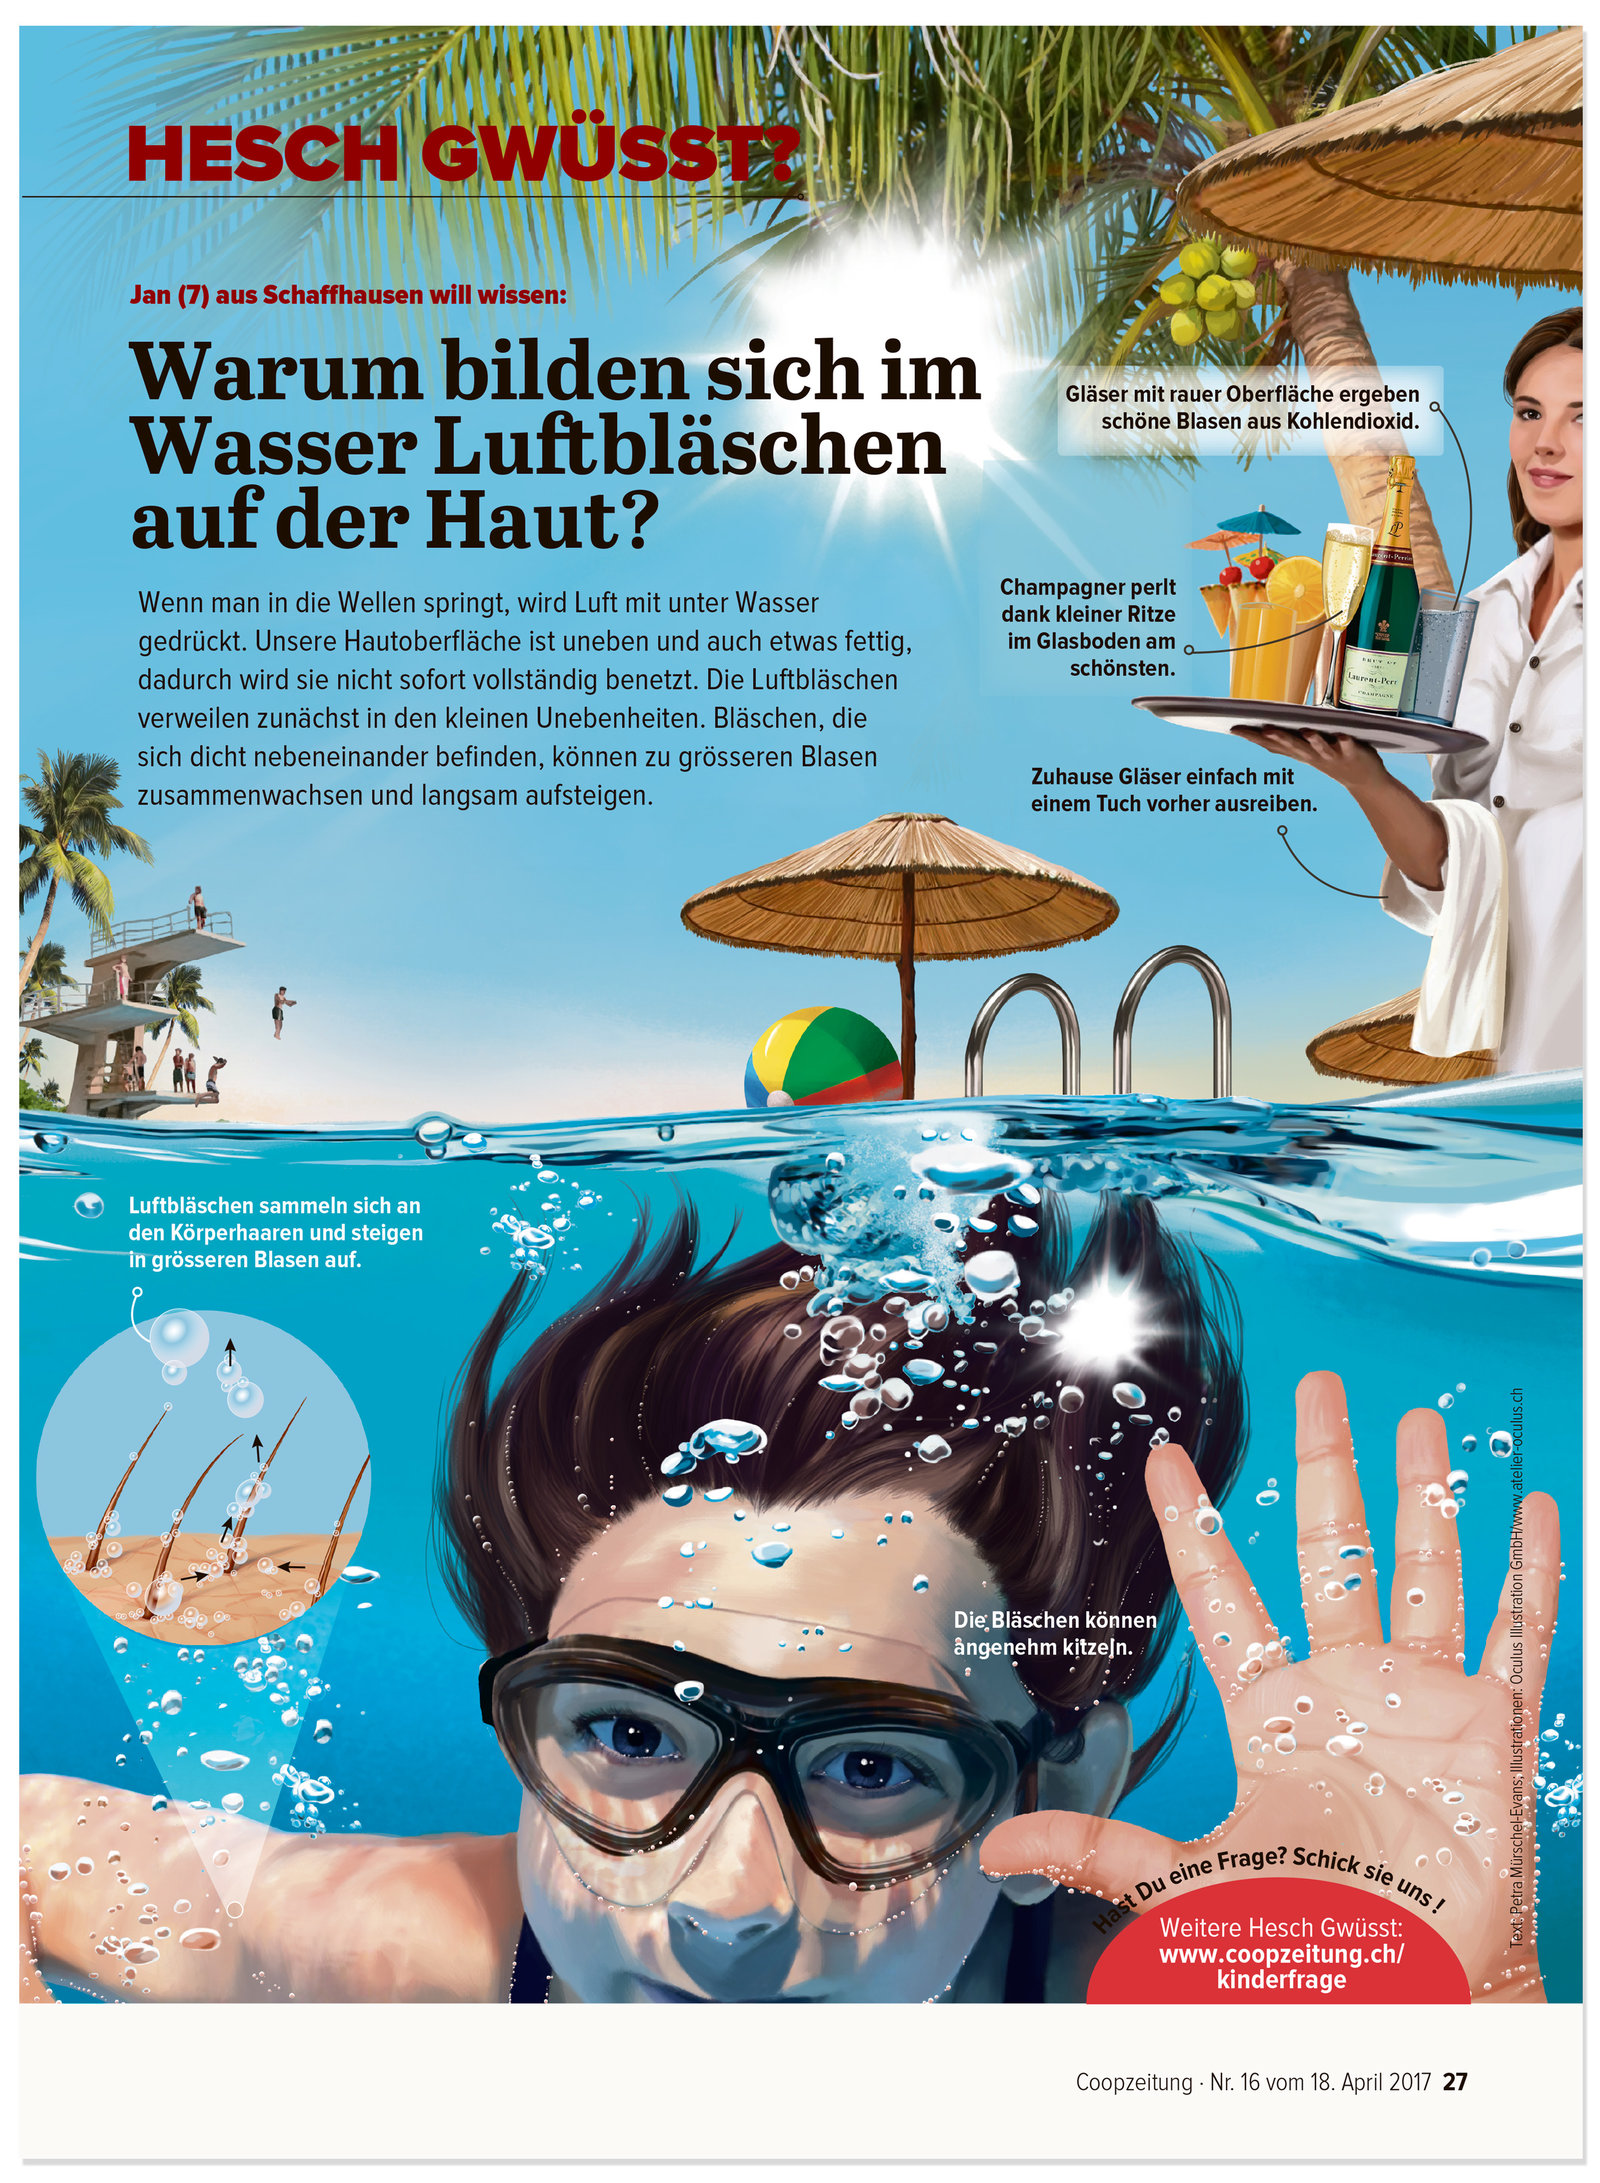 oculus-illustration-coopzeitung-hesch-gwuesst-luftblasen-haut